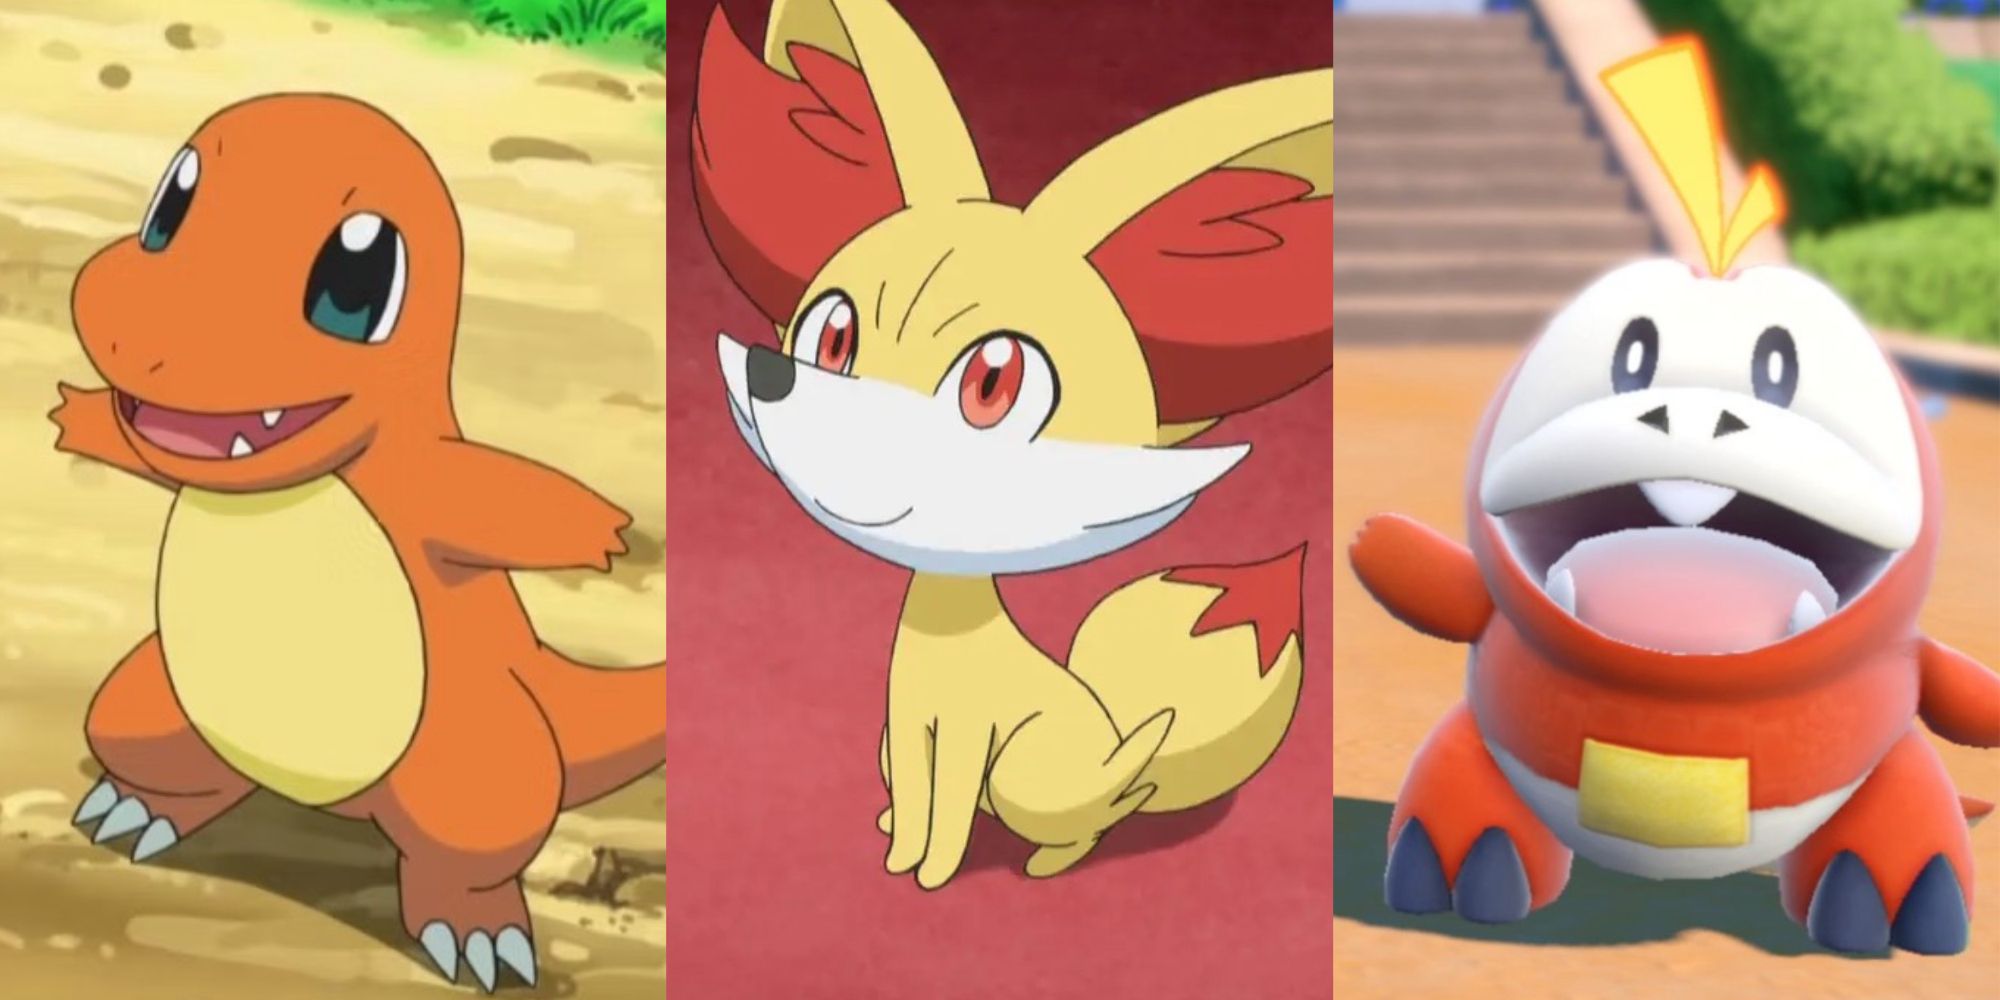 The best fire Pokémon in Pokémon Go 2023